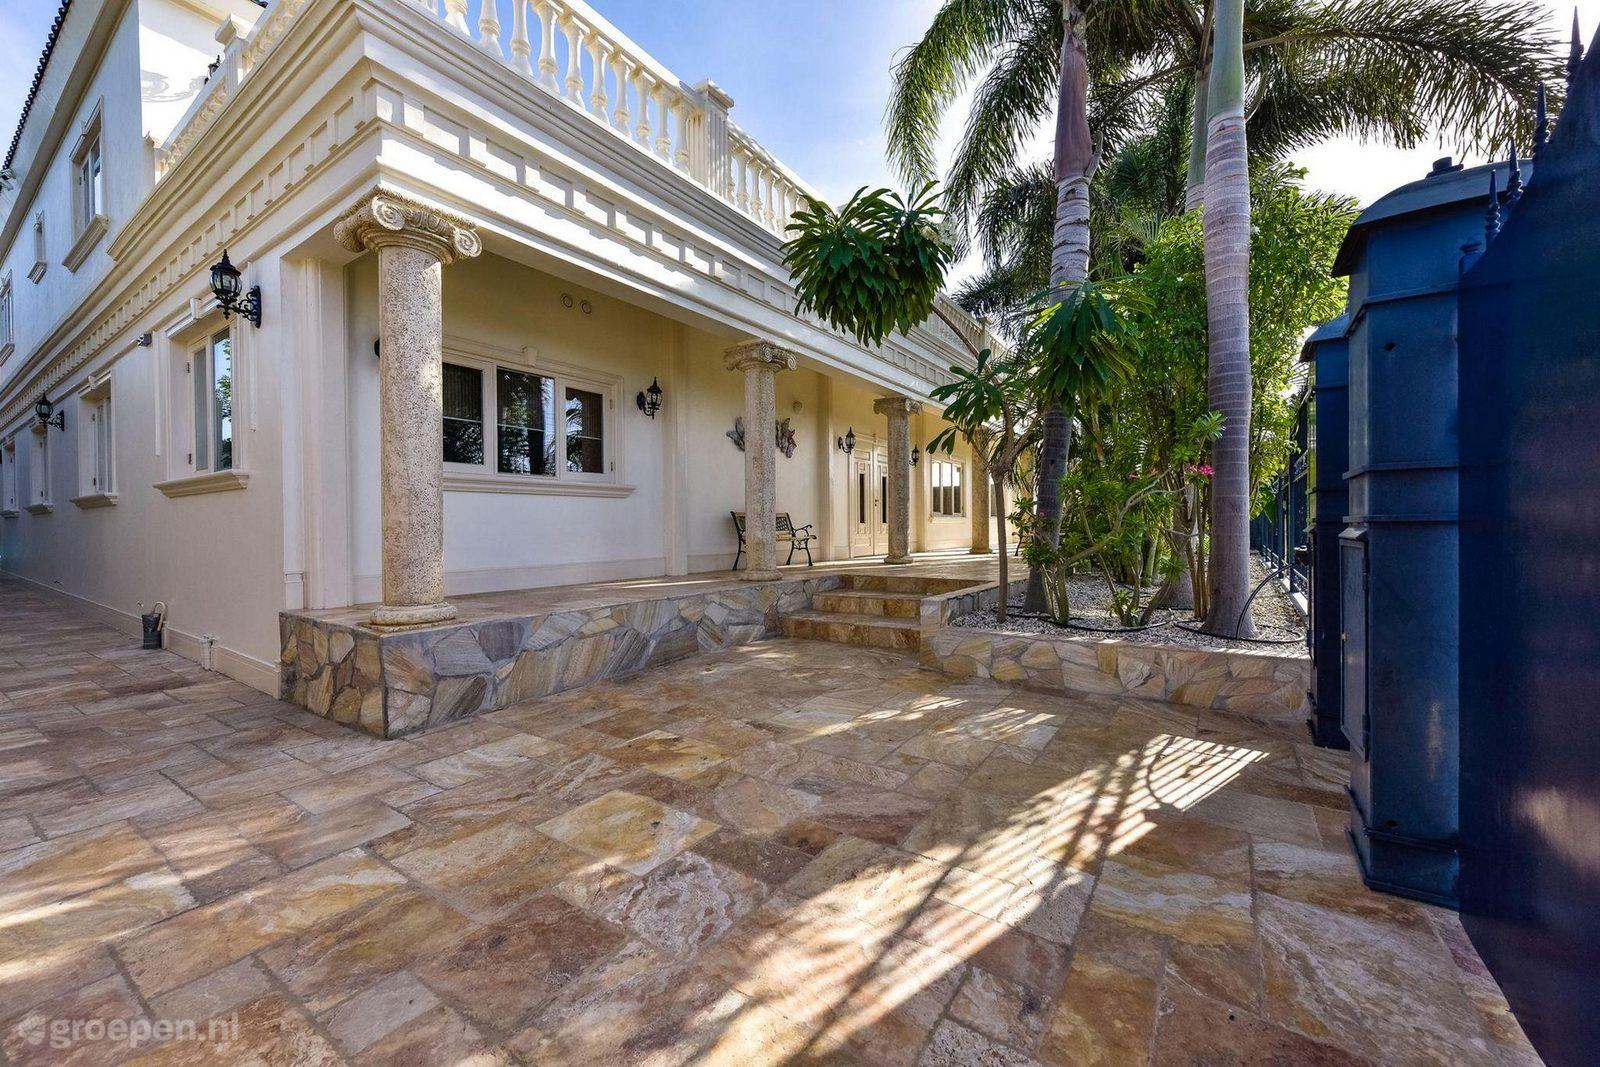 Villa Aruba